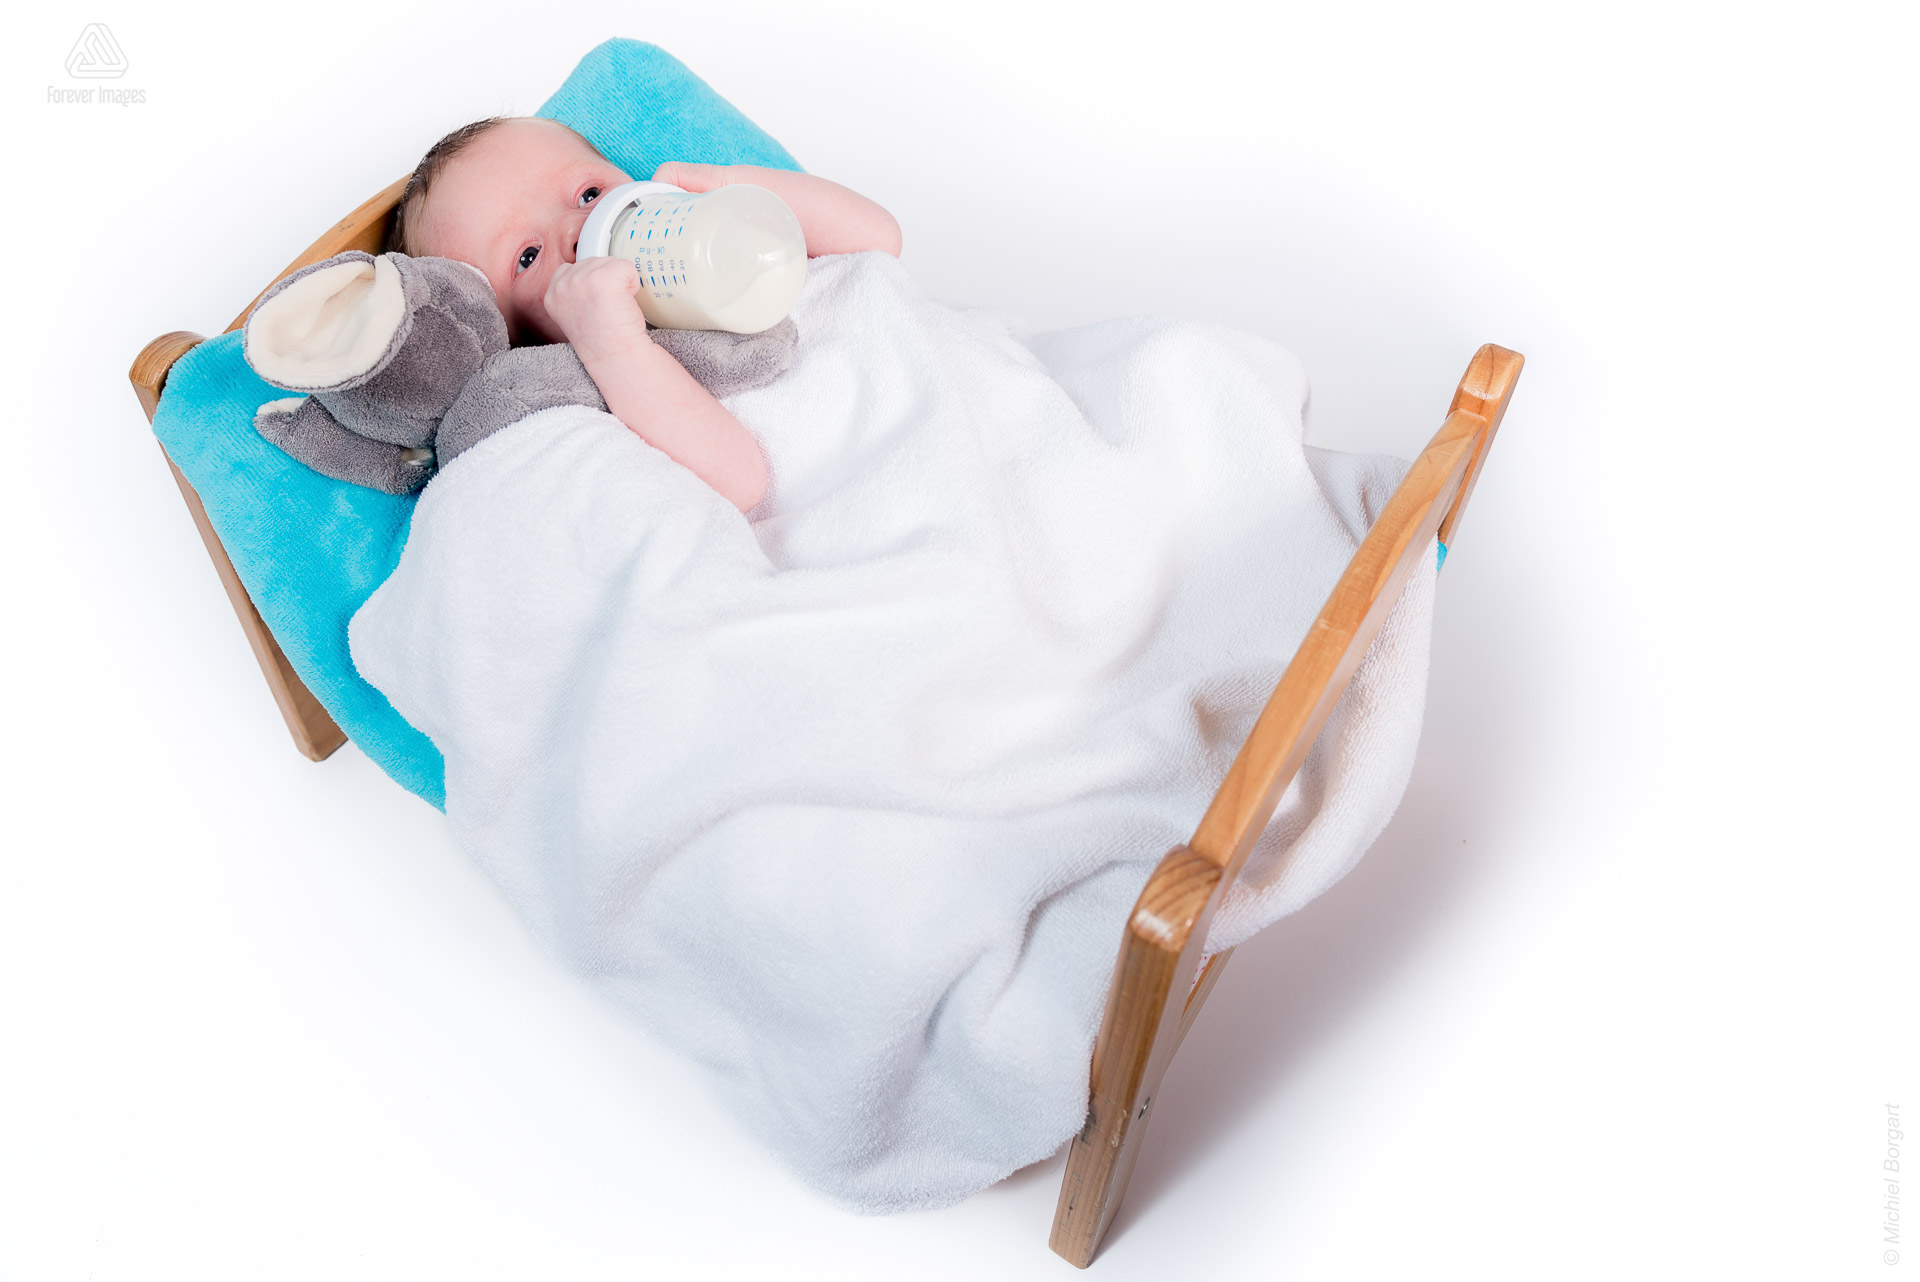 Portretfoto pasgeboren baby new born in zijn bedje aan de fles | Kylian | Portretfotograaf Michiel Borgart - Forever Images.